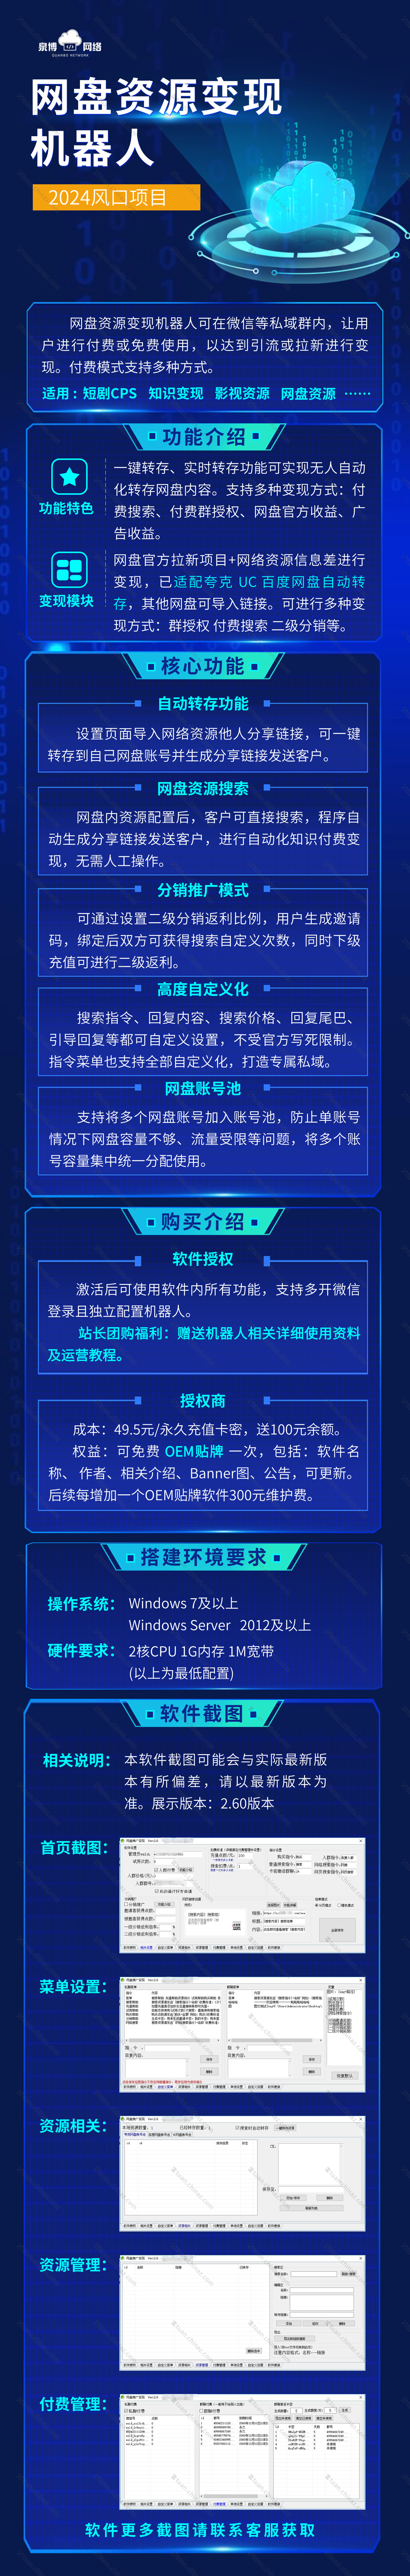 it互联网数字平台服务介绍长图海报(2) (3).png